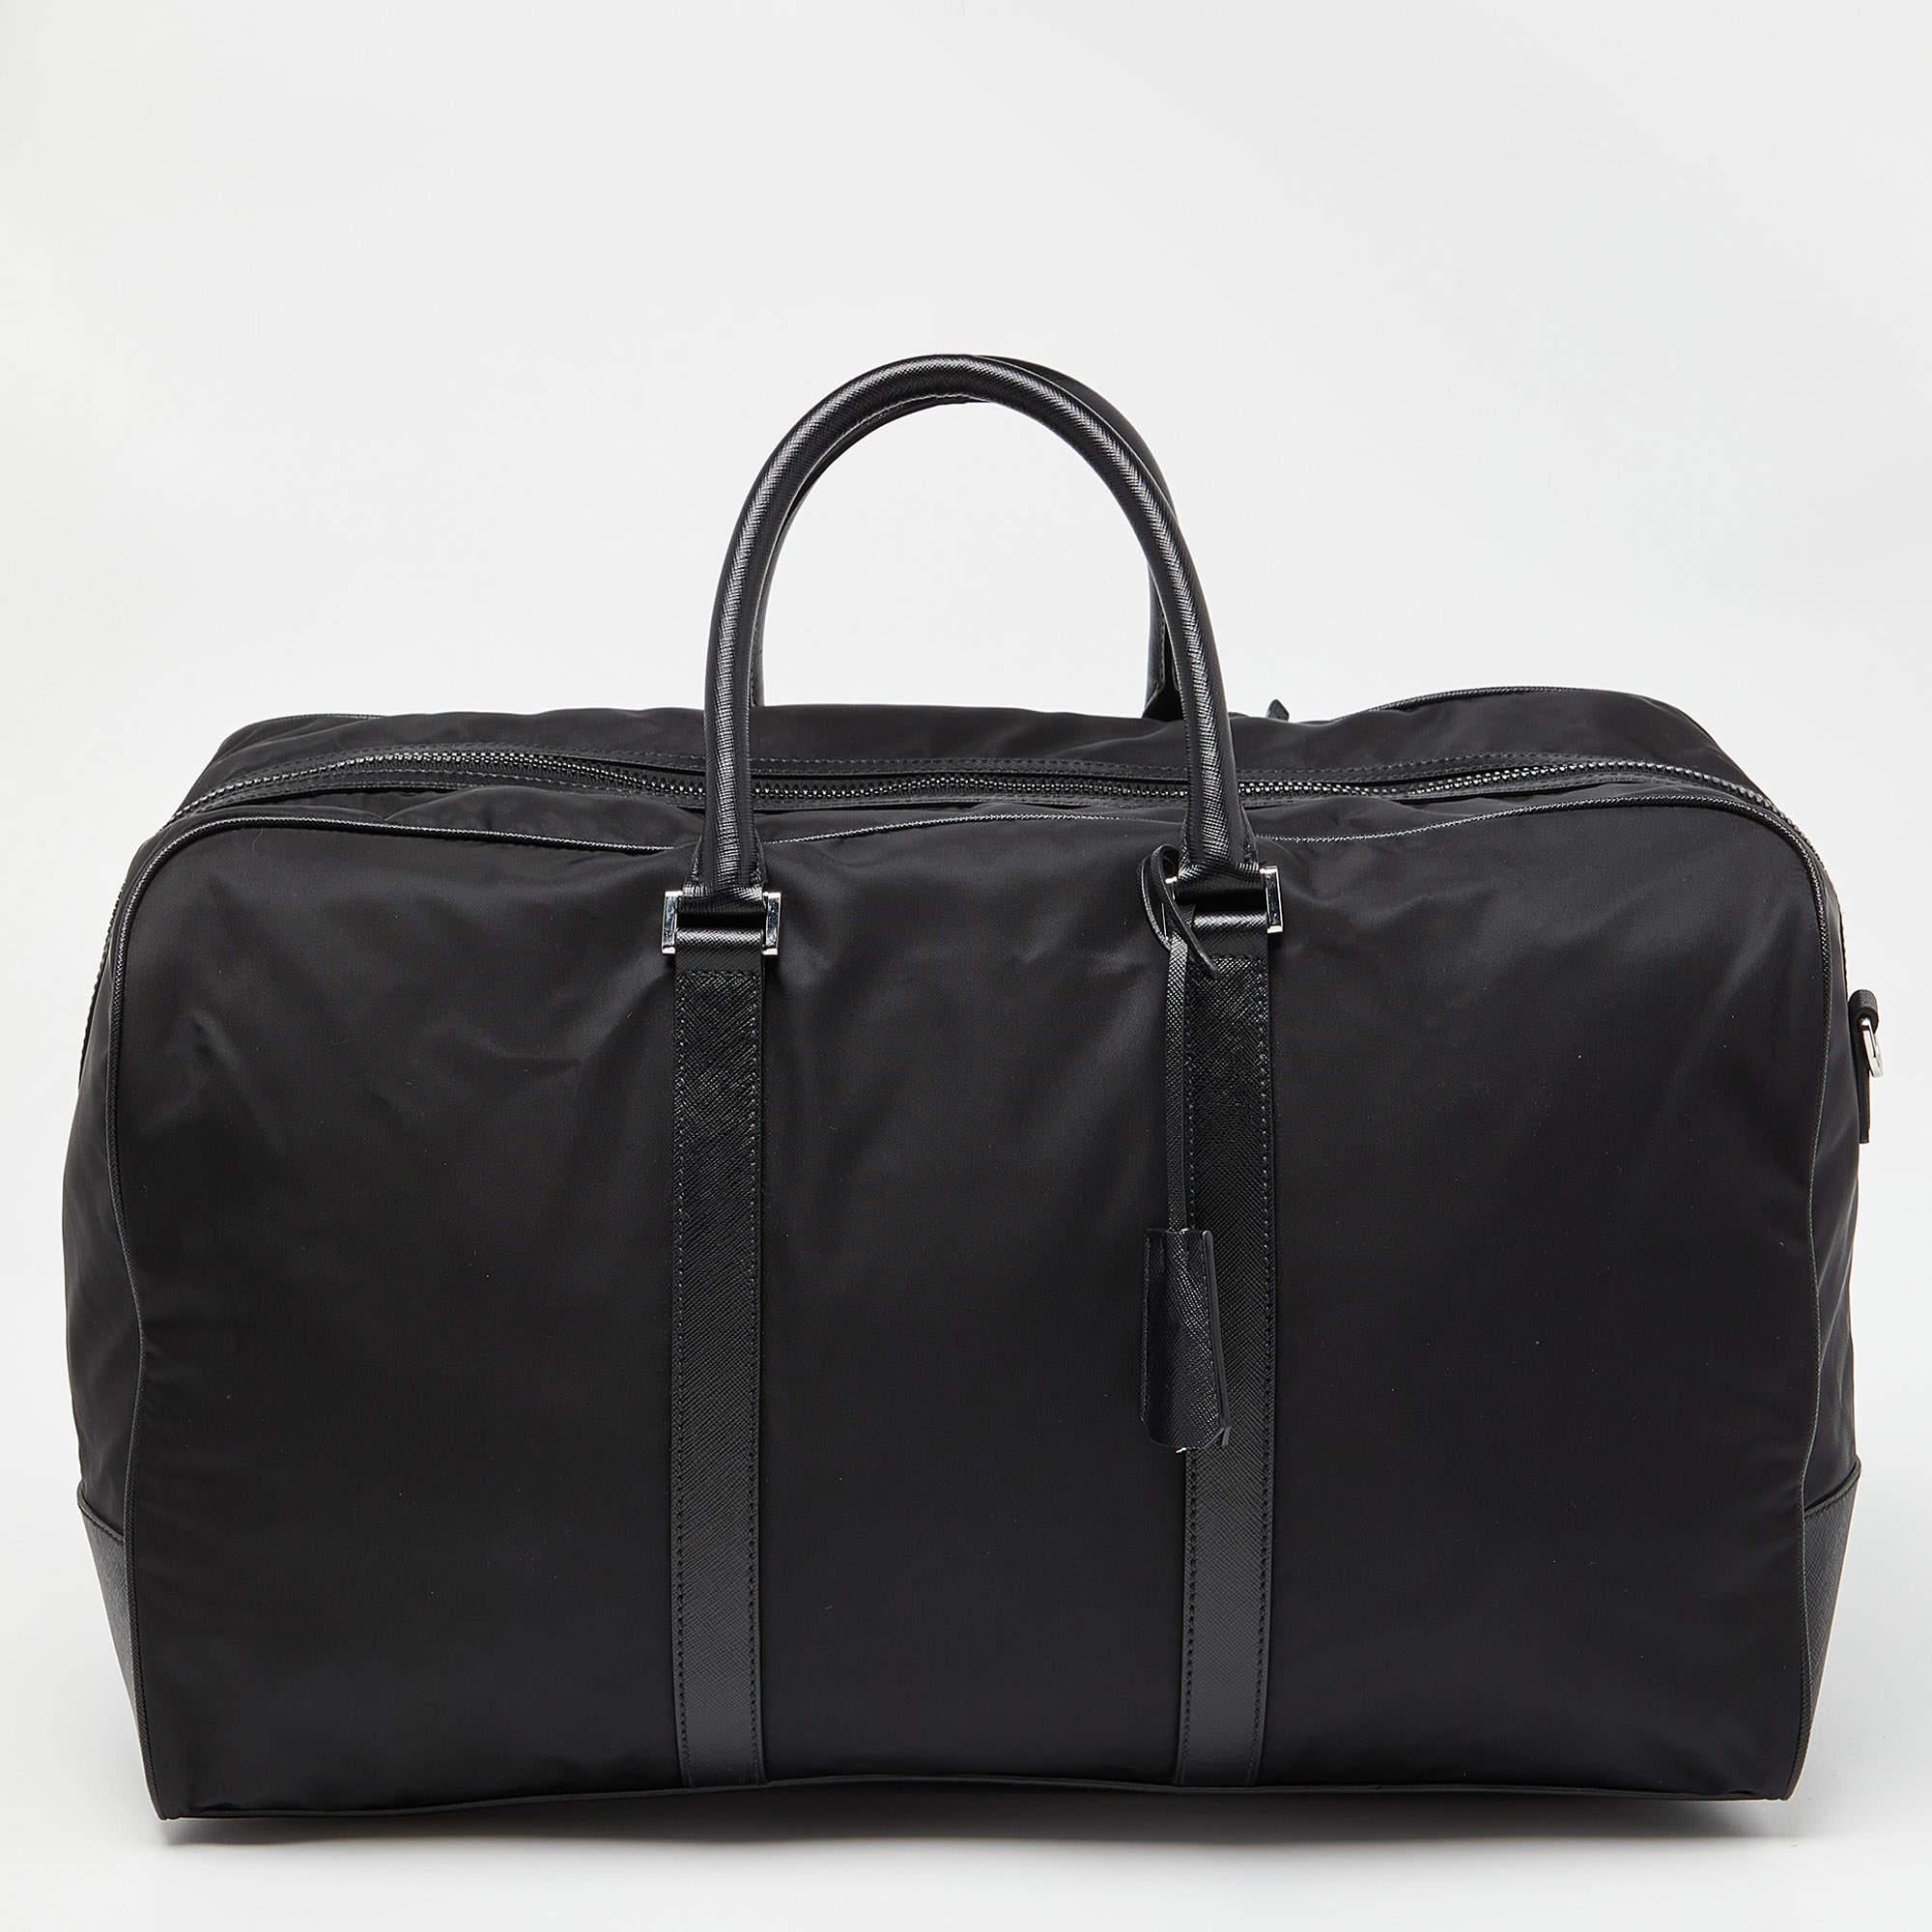 Le sac de sport Prada est un accessoire sophistiqué et polyvalent. Il associe un nylon noir résistant à d'élégantes touches de cuir. Avec son intérieur spacieux, ses multiples poches et sa bandoulière amovible, il est parfait pour les voyages et